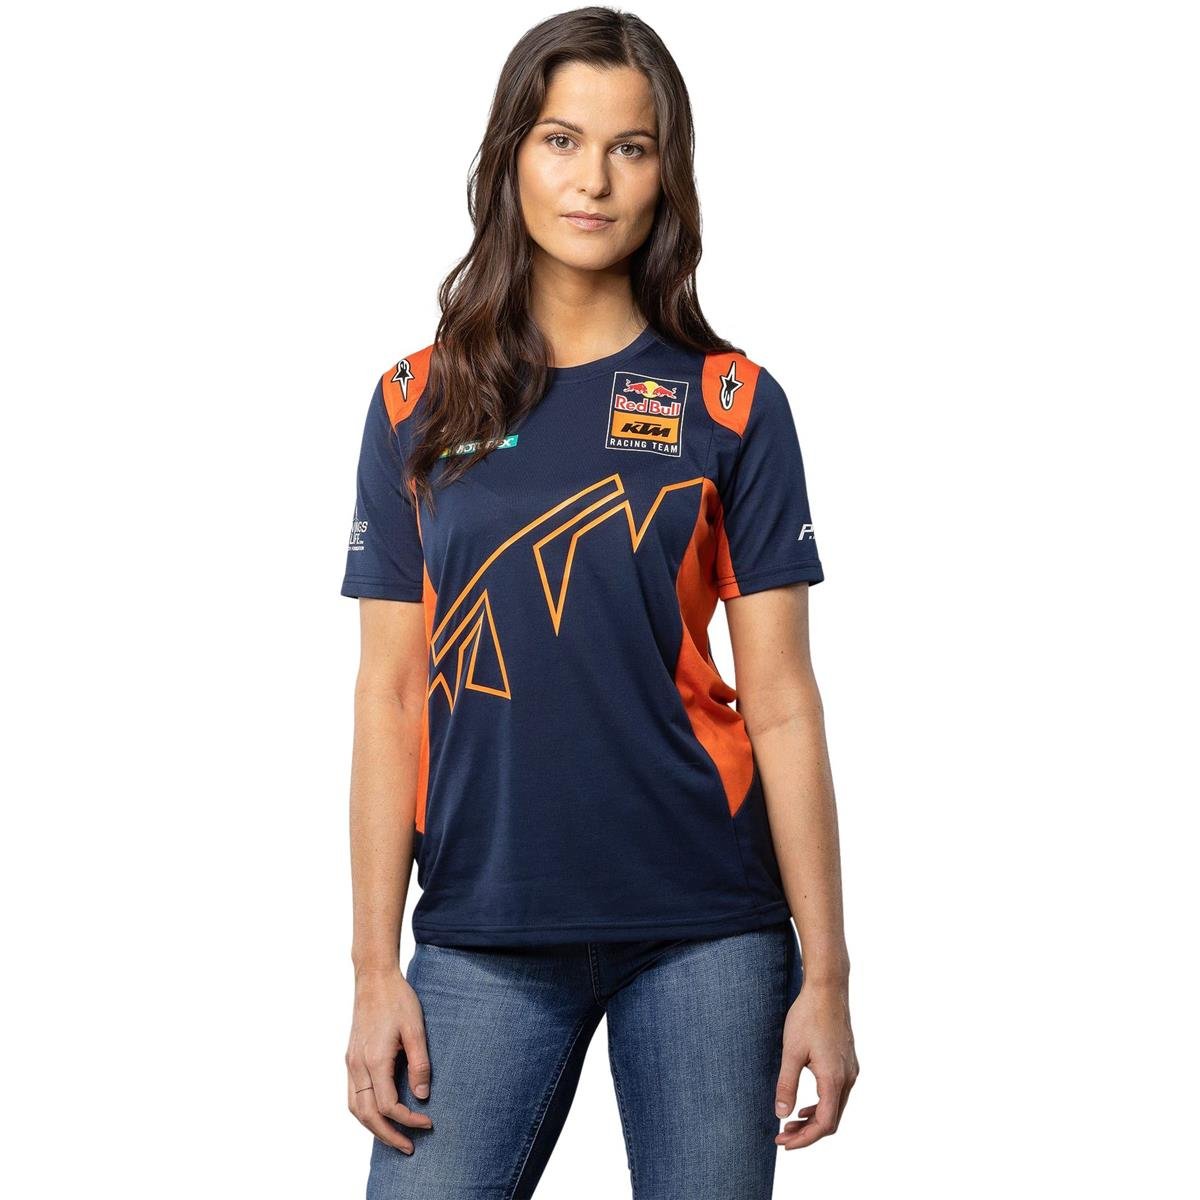 Red Bull Girls T-Shirt KTM Official Teamline Navy/Orange